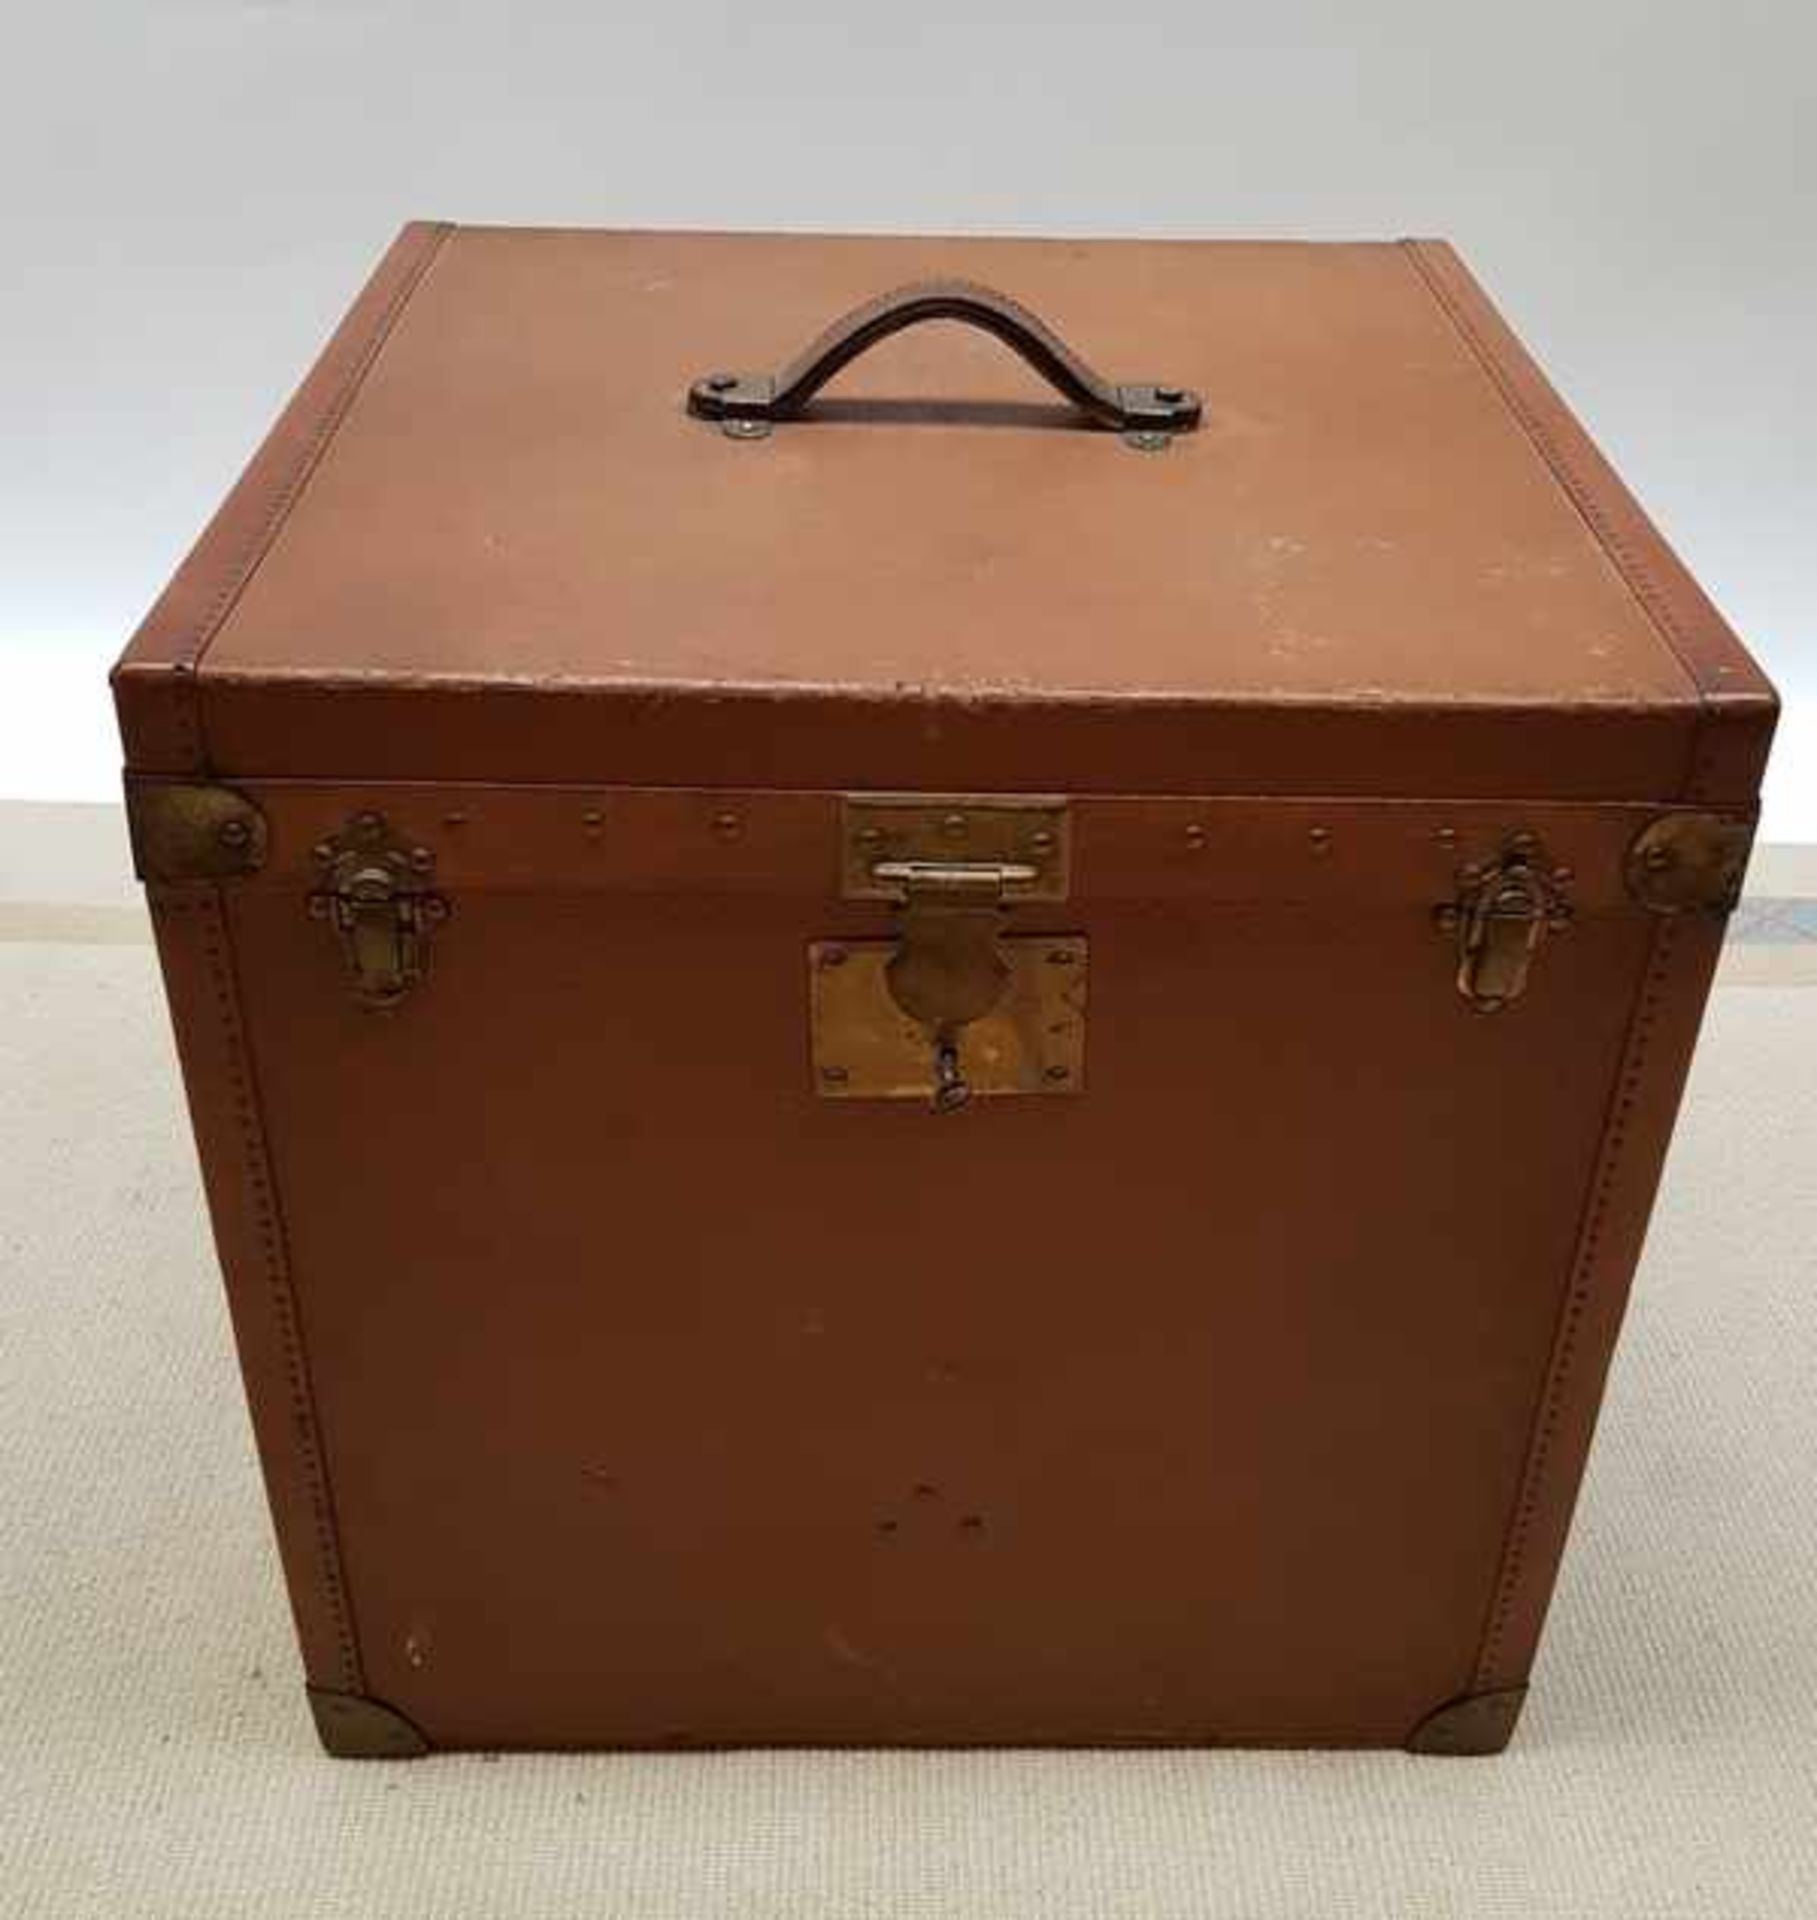 (Curiosa) HutkofferVierkante hutkoffer, begin 20e eeuw. Conditie: In goede staat. Afmetingen: Hoogte - Image 4 of 4